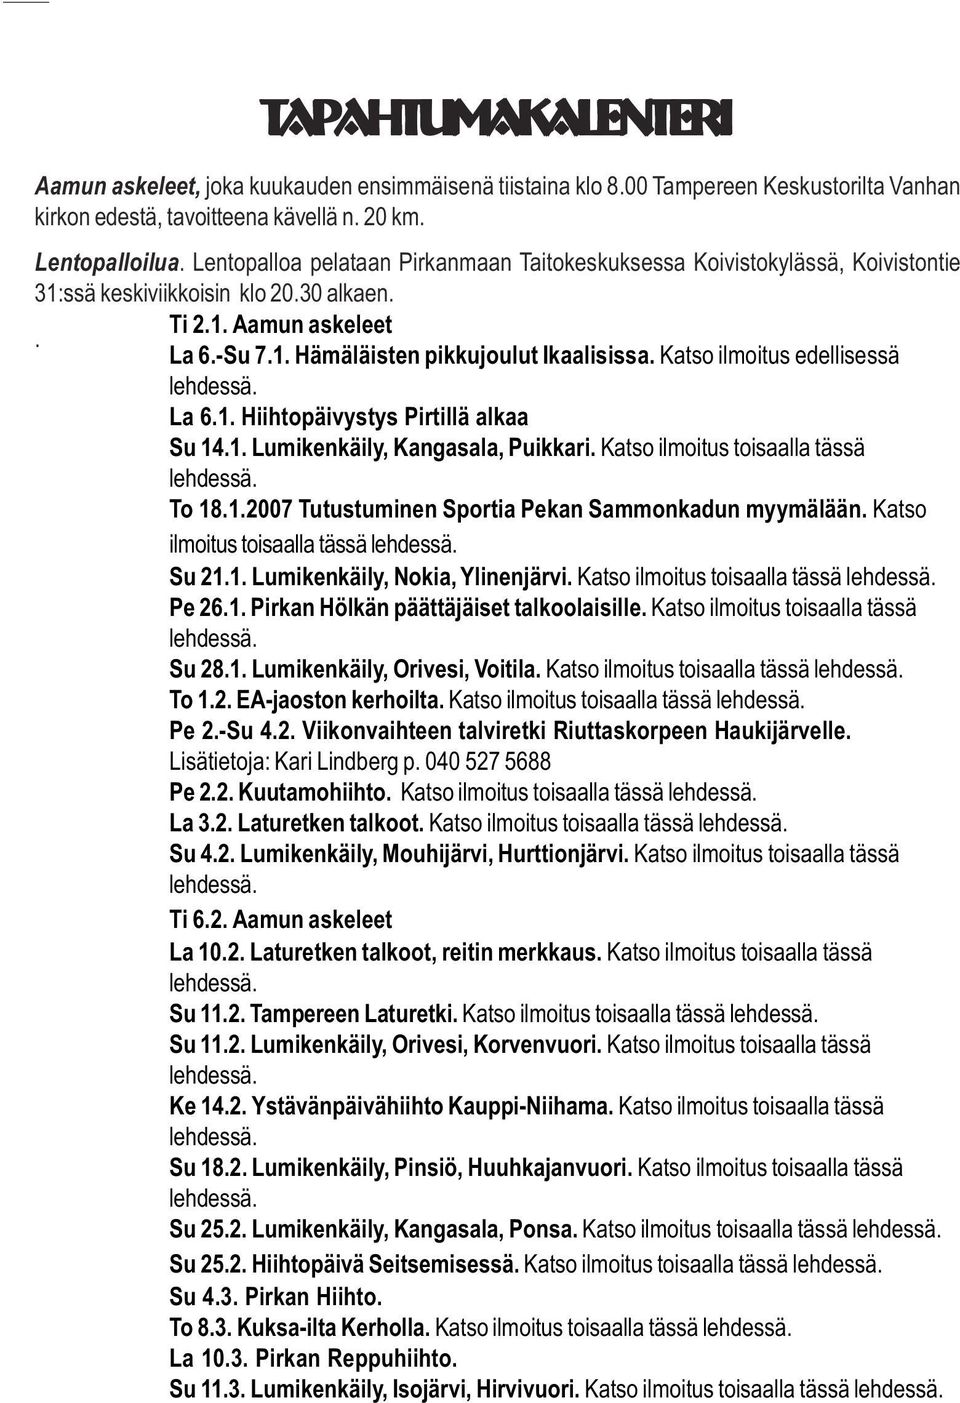 Katso ilmoitus edellisessä lehdessä. La 6.1. Hiihtopäivystys Pirtillä alkaa Su 14.1. Lumikenkäily, Kangasala, Puikkari. Katso ilmoitus toisaalla tässä lehdessä. To 18.1.2007 Tutustuminen Sportia Pekan Sammonkadun myymälään.